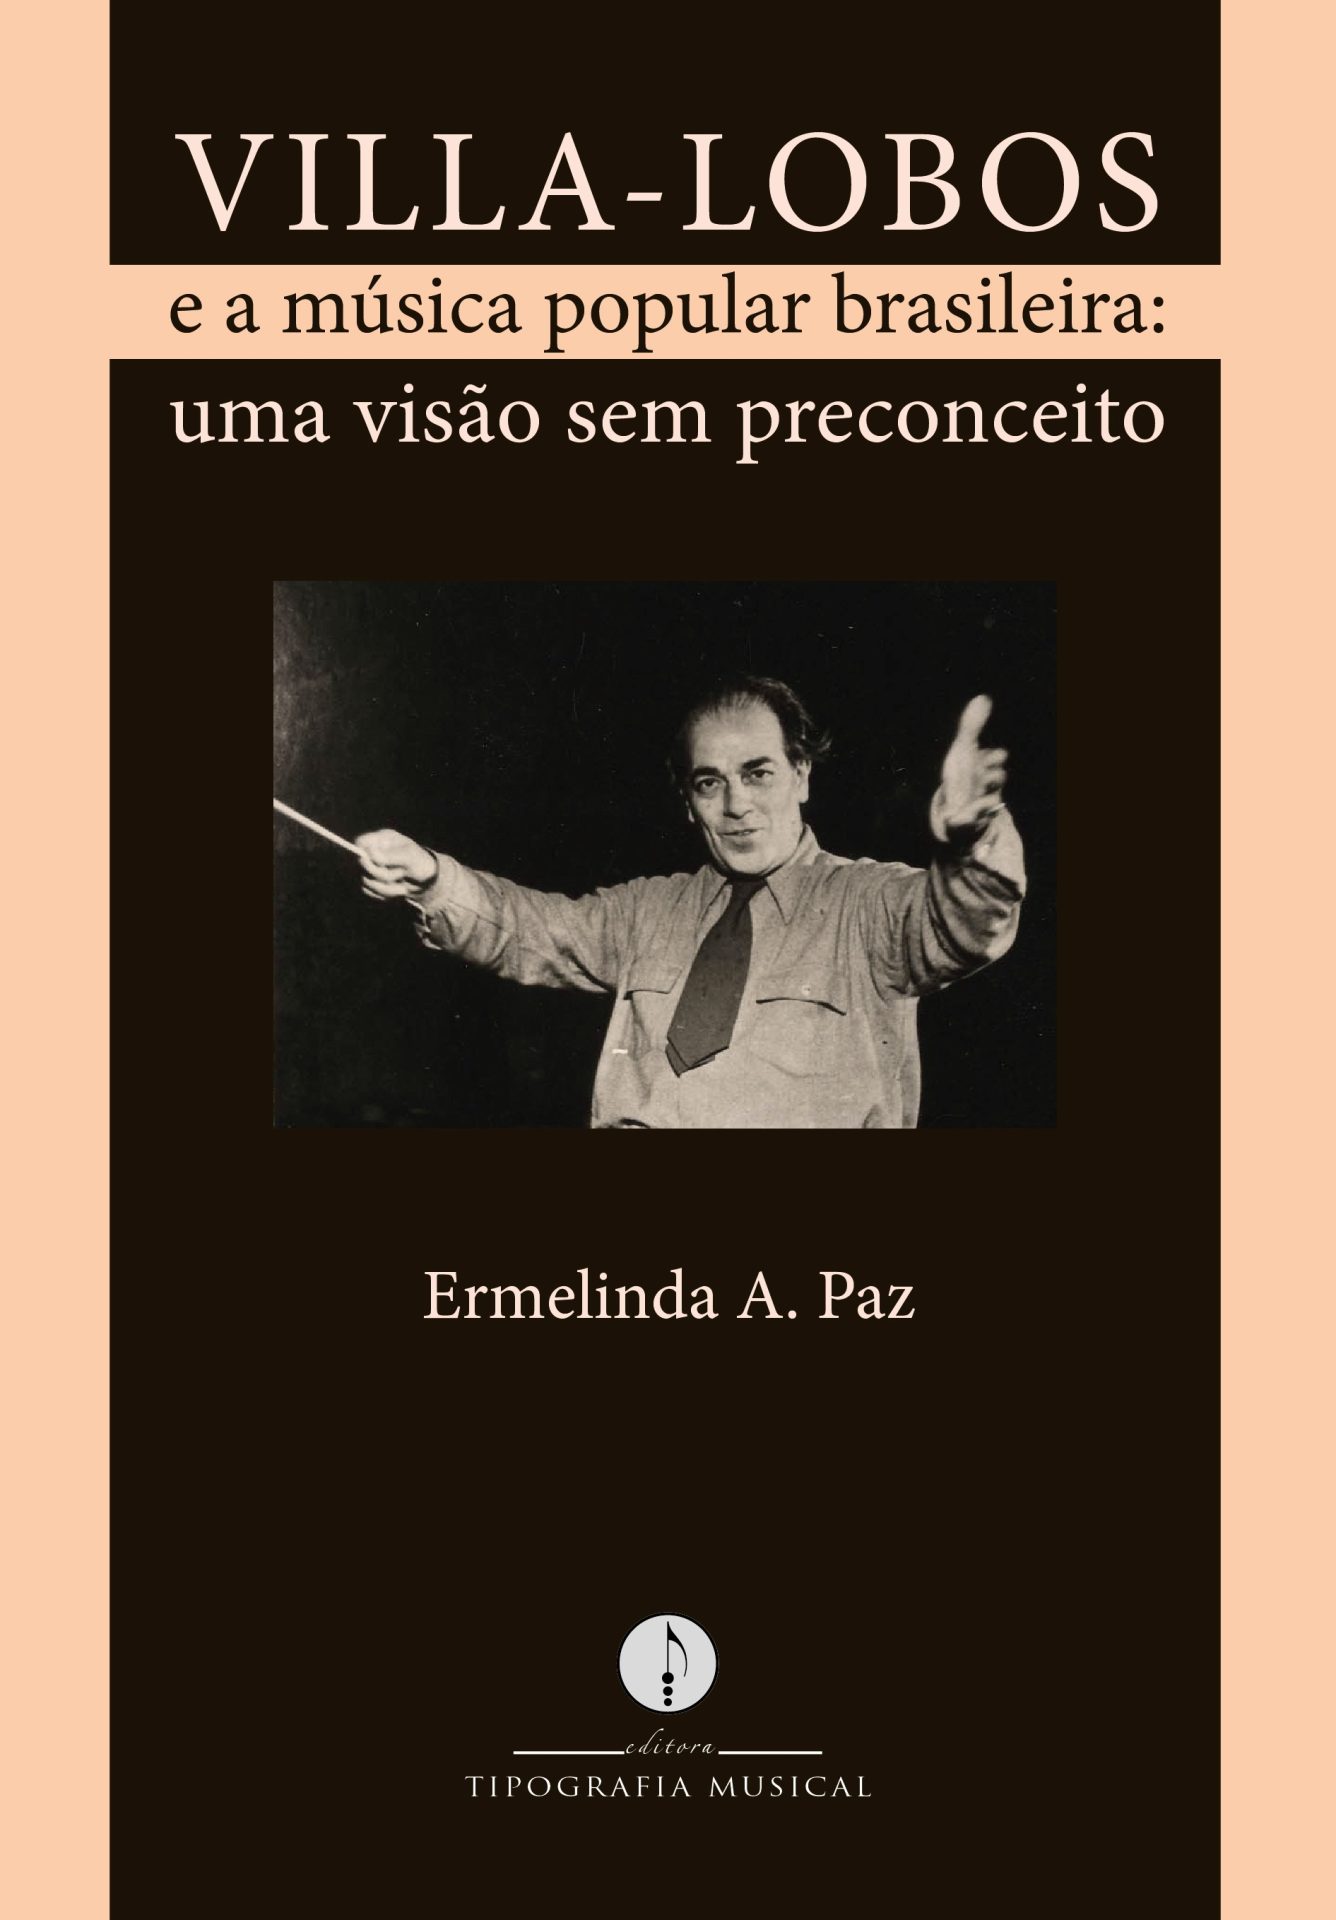 "Villa-Lobos e a Música Popular Brasileira"